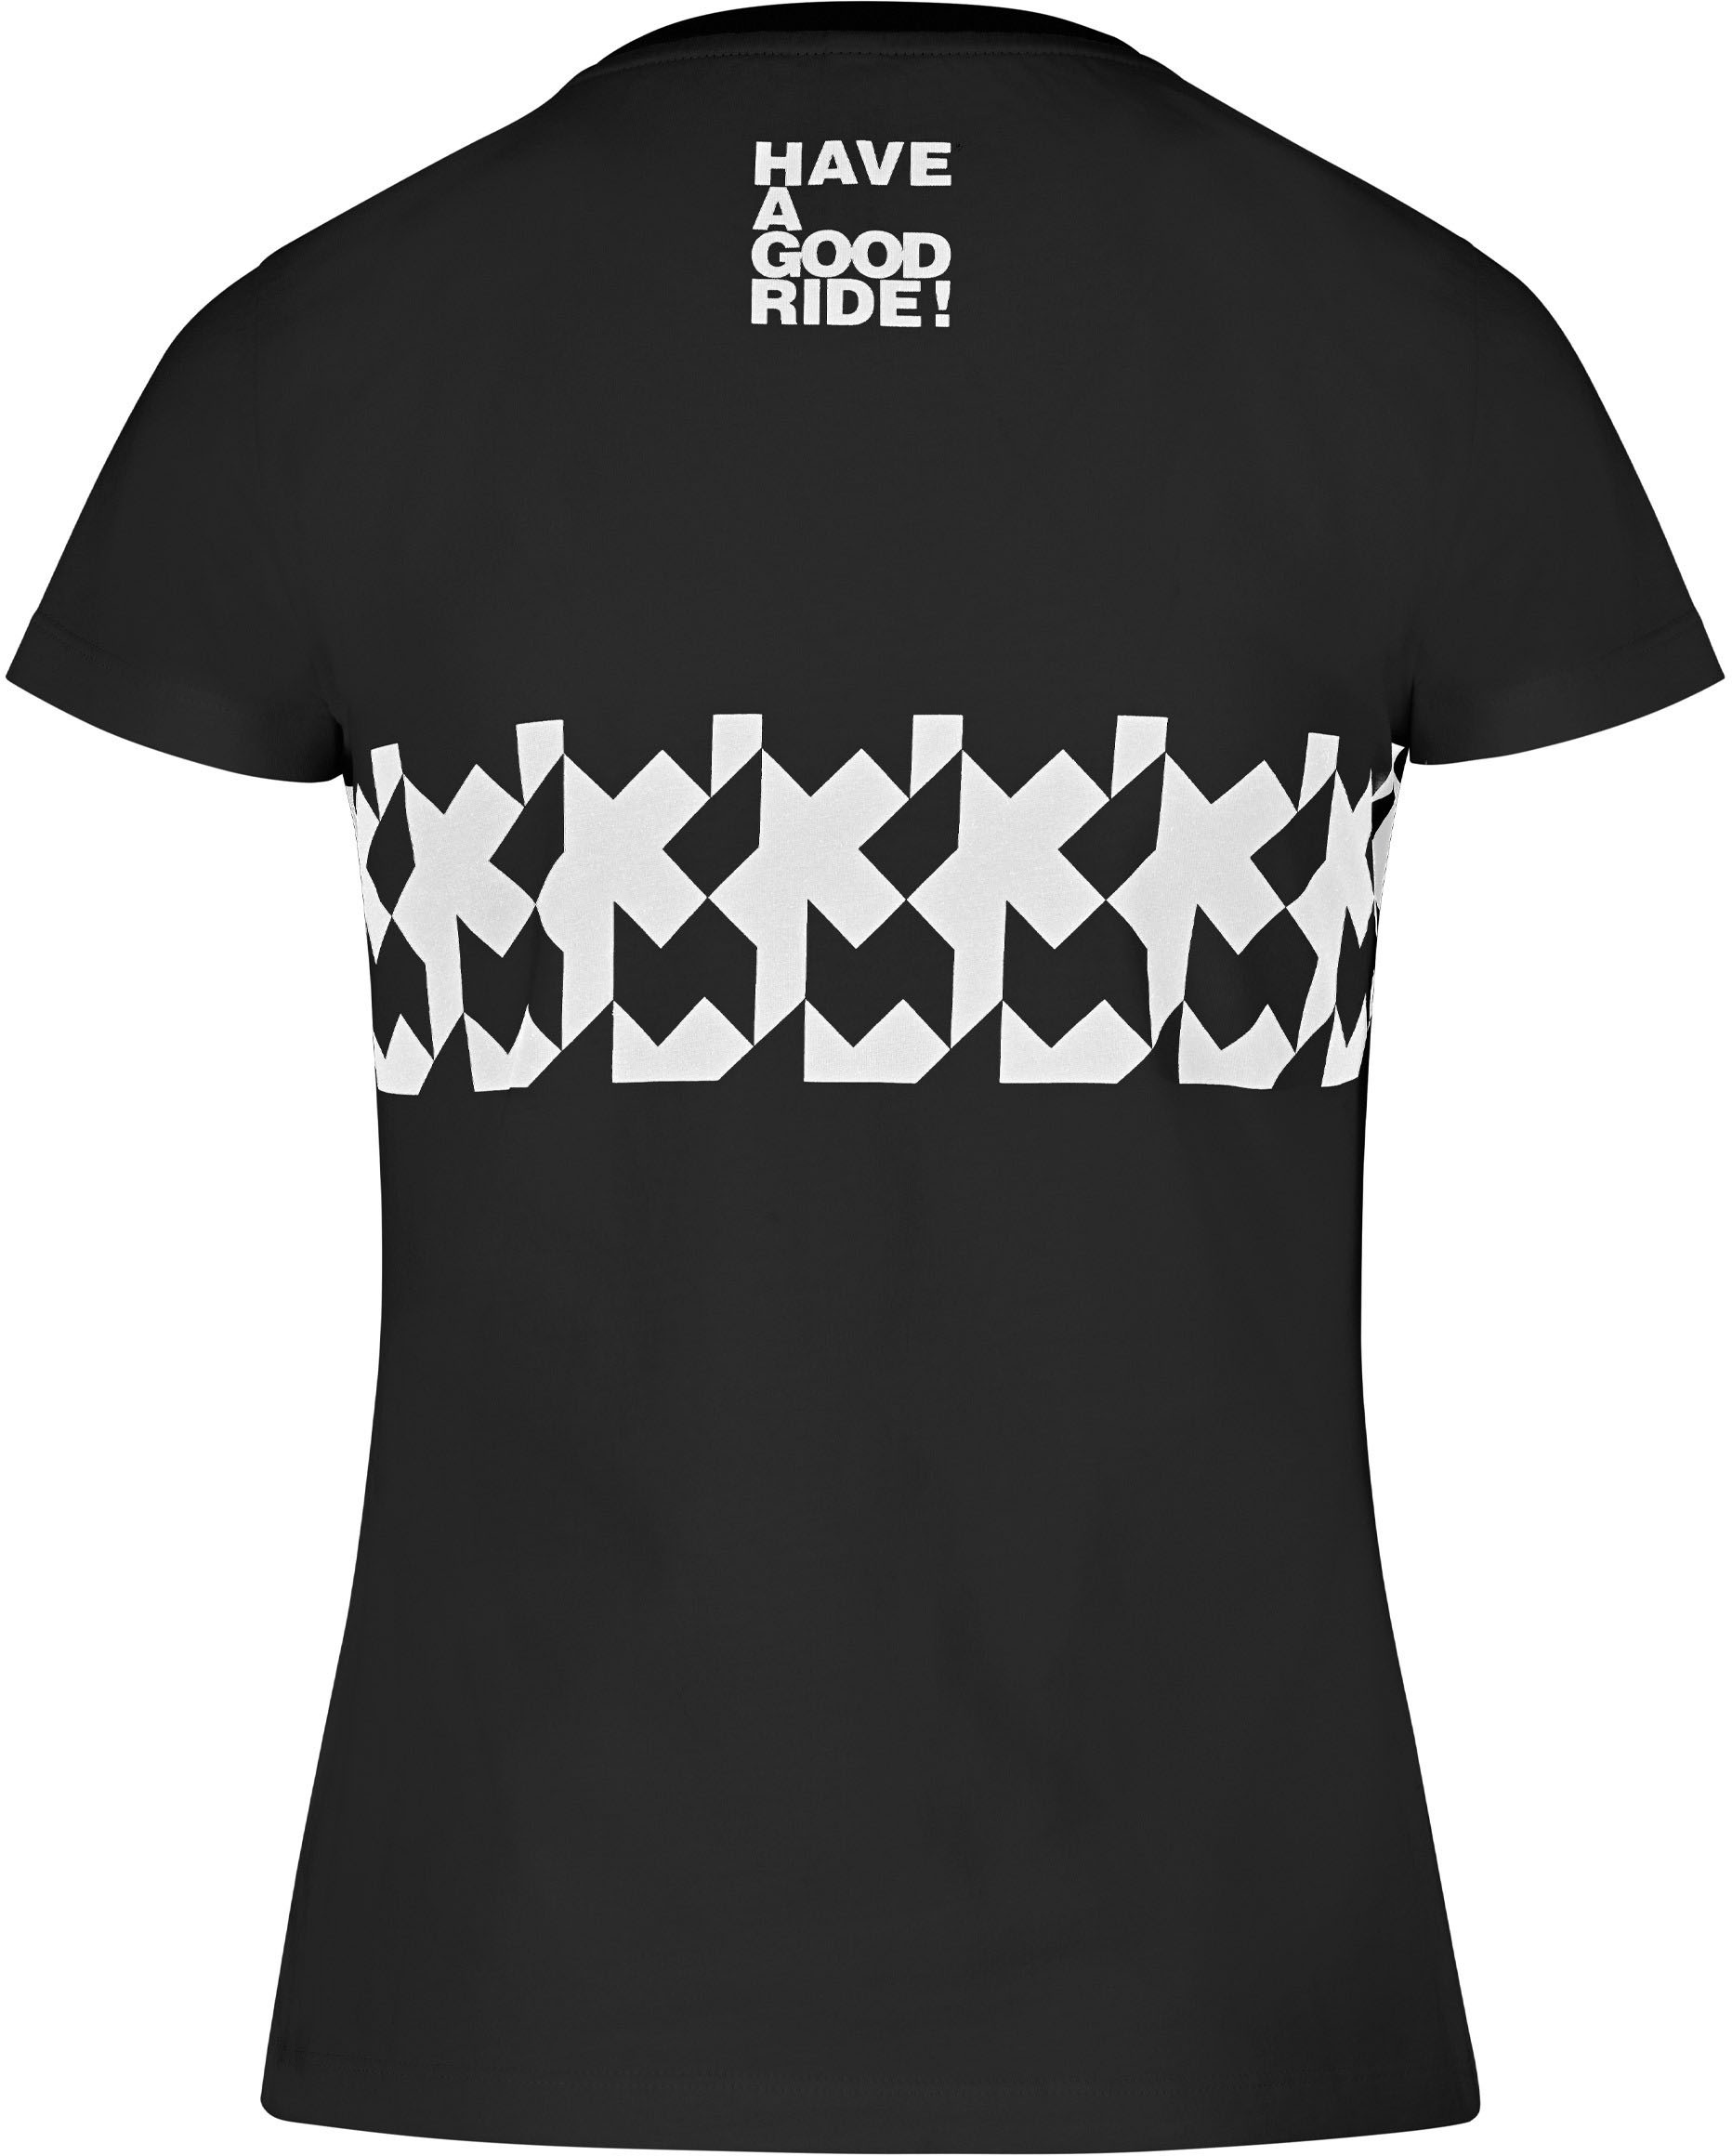 Beklædning - Merchandise - Assos SIGNATURE Women's Summer T-Shirt RS Griffe - Sort